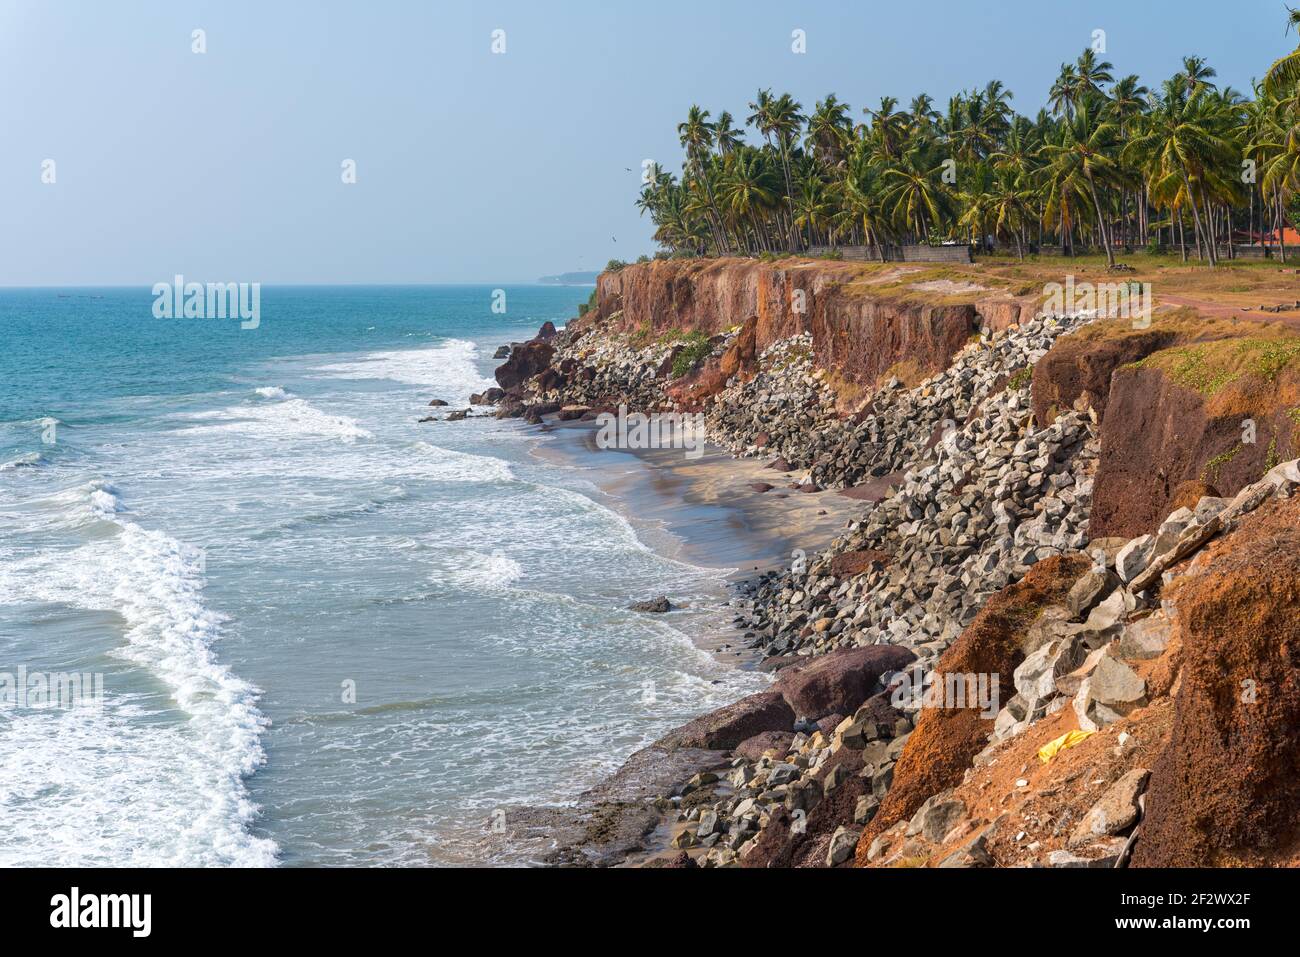 Misure di protezione delle coste marine in India - coste ripide rinforzate con stones.Varkala, Kerala, India. Foto Stock